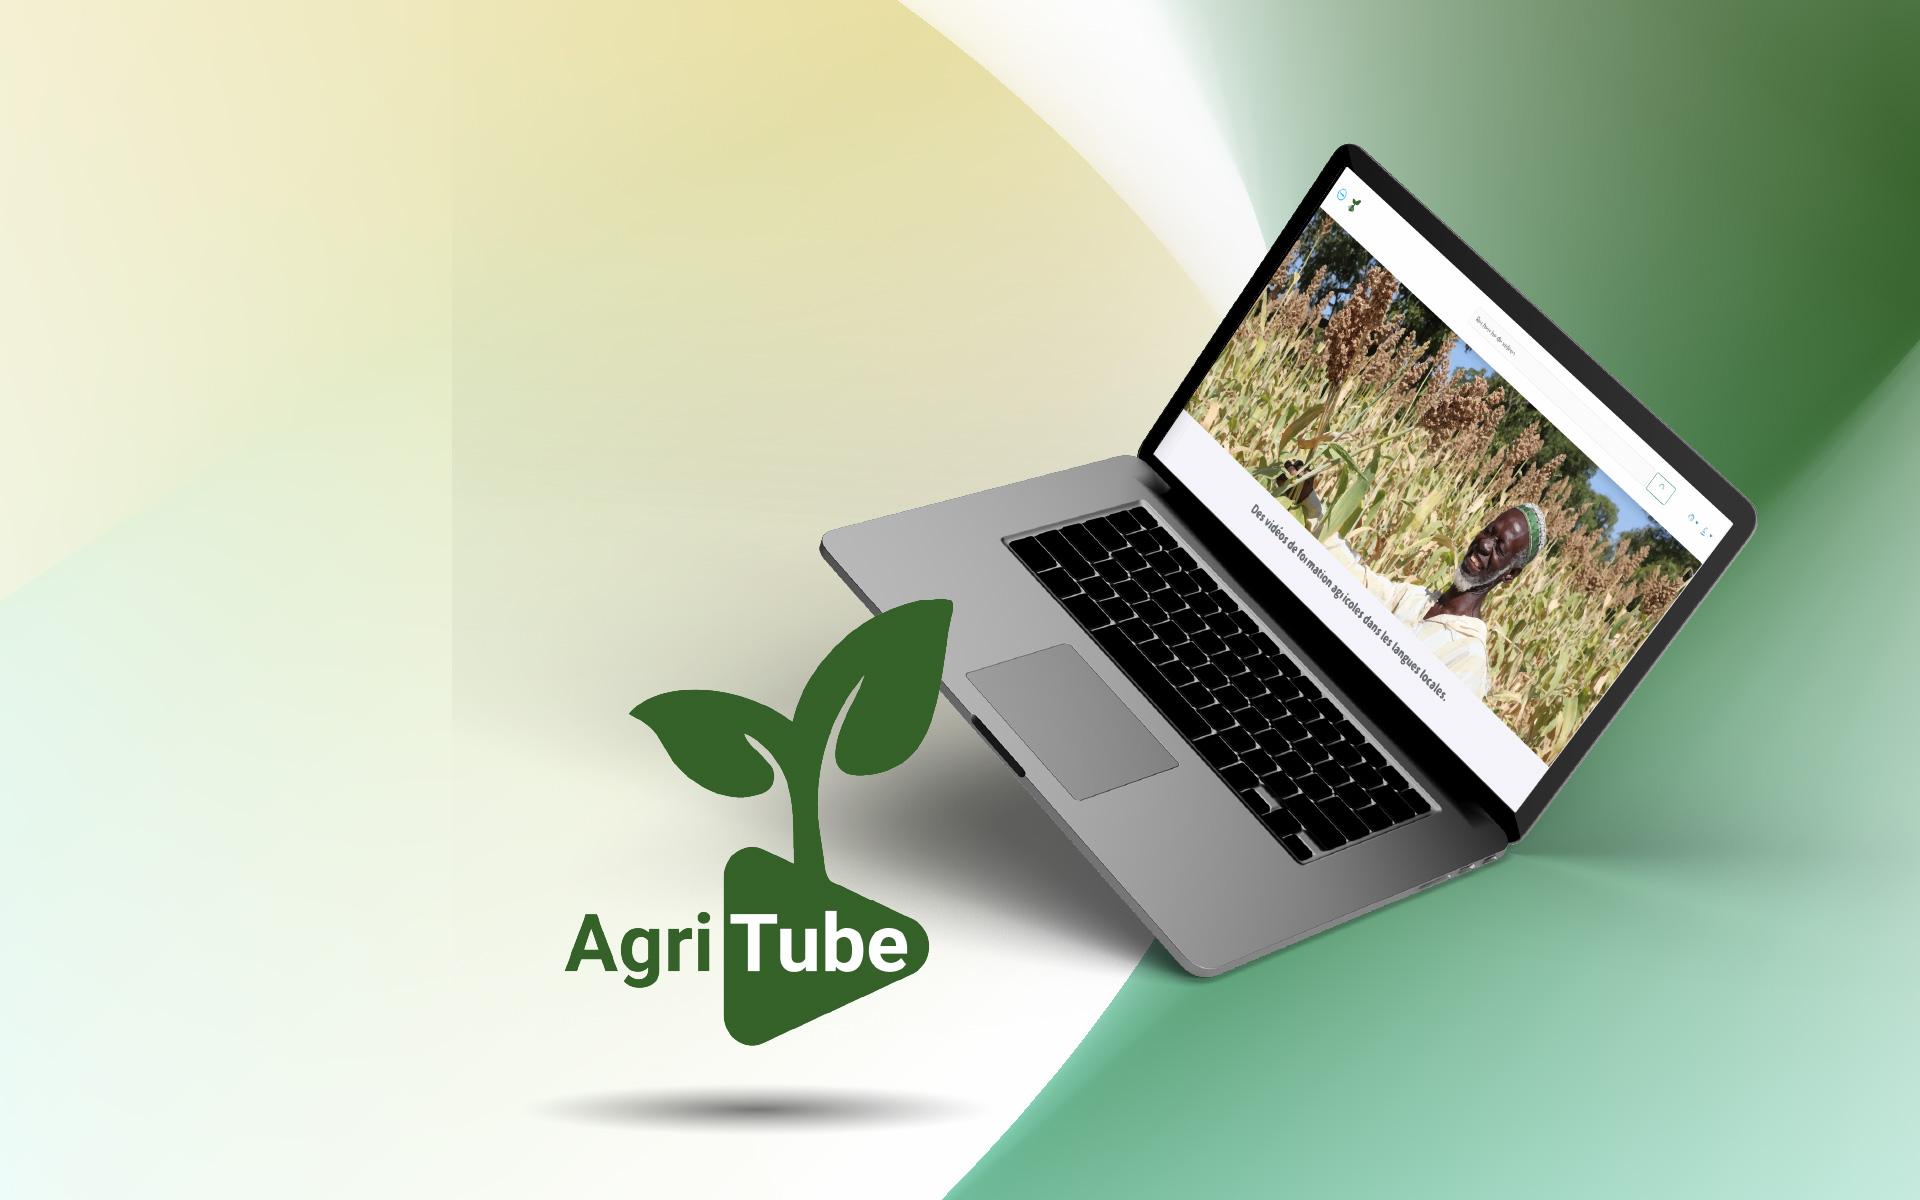 Des vidéos de formation agricoles dans les langues locales.